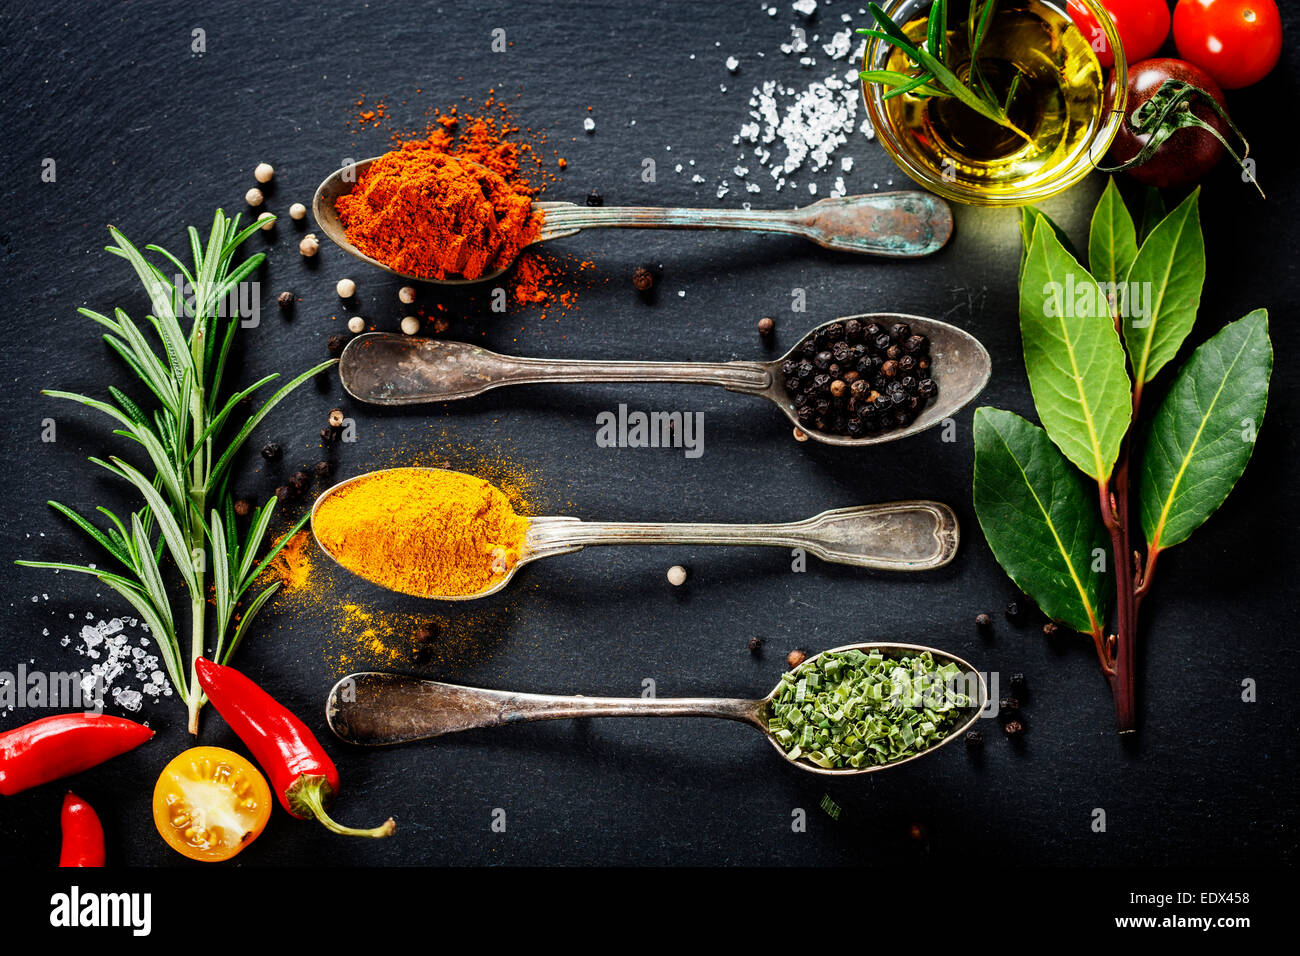 Kräuter und Gewürze Auswahl - Kräuter und Gewürze, alte Metalllöffel und Schiefer Hintergrund - kochen, gesunde Ernährung Stockfoto